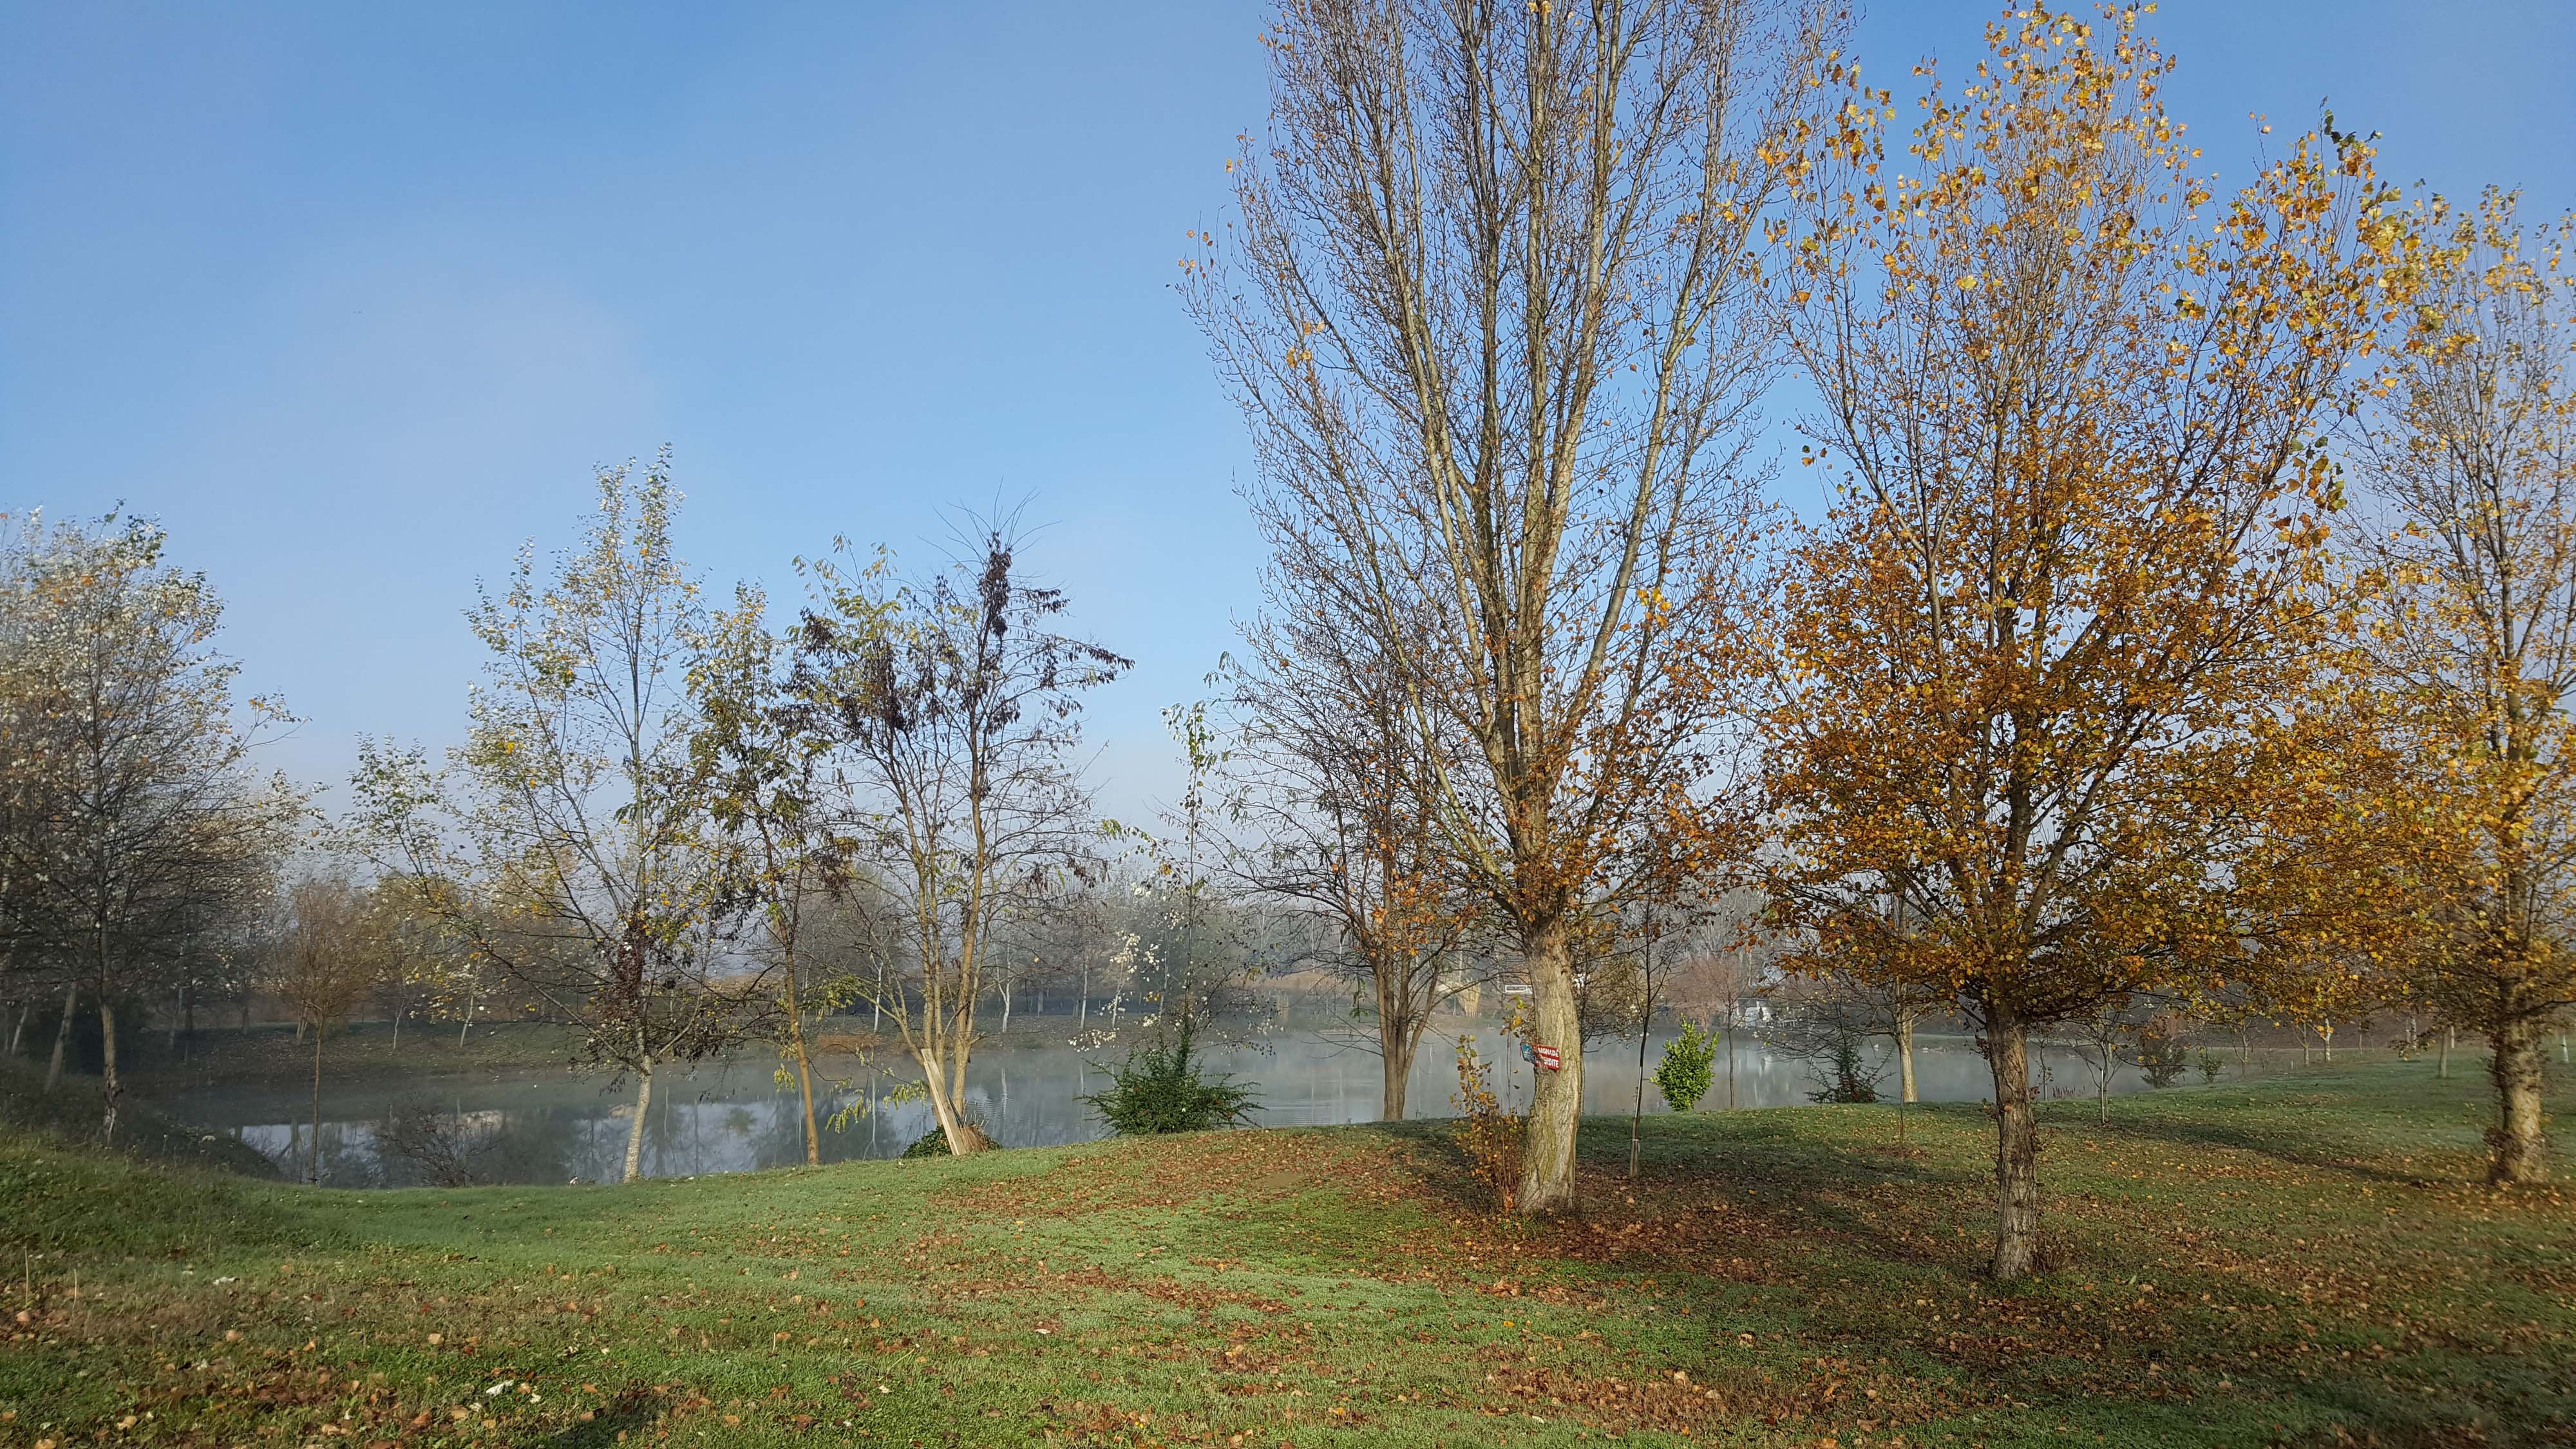 Bords de Garonne à l'automne